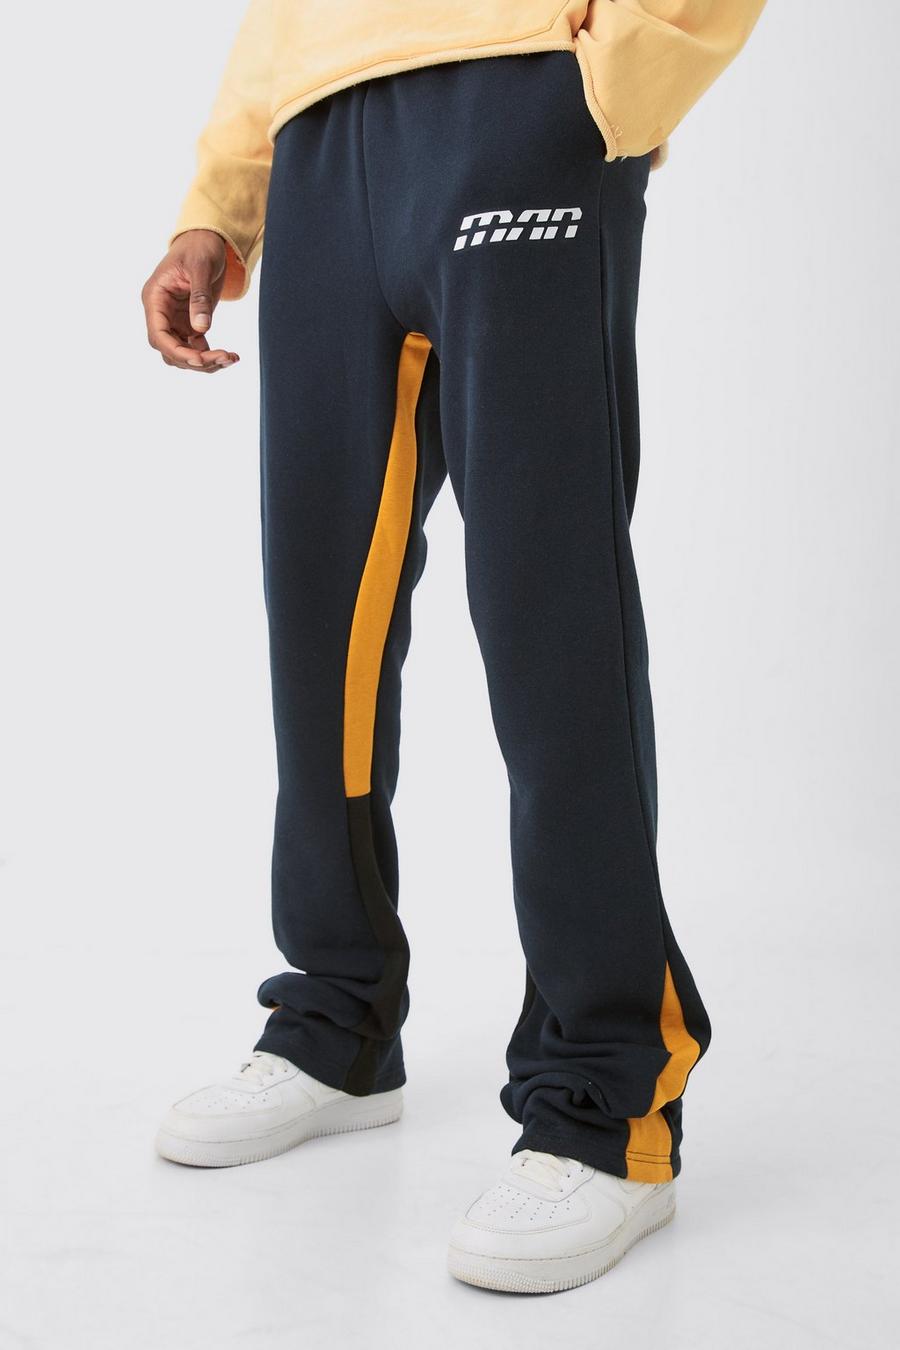 Pantaloni tuta a zampa Tall Slim Fit a blocchi di colore blu navy con inserti e inserti image number 1